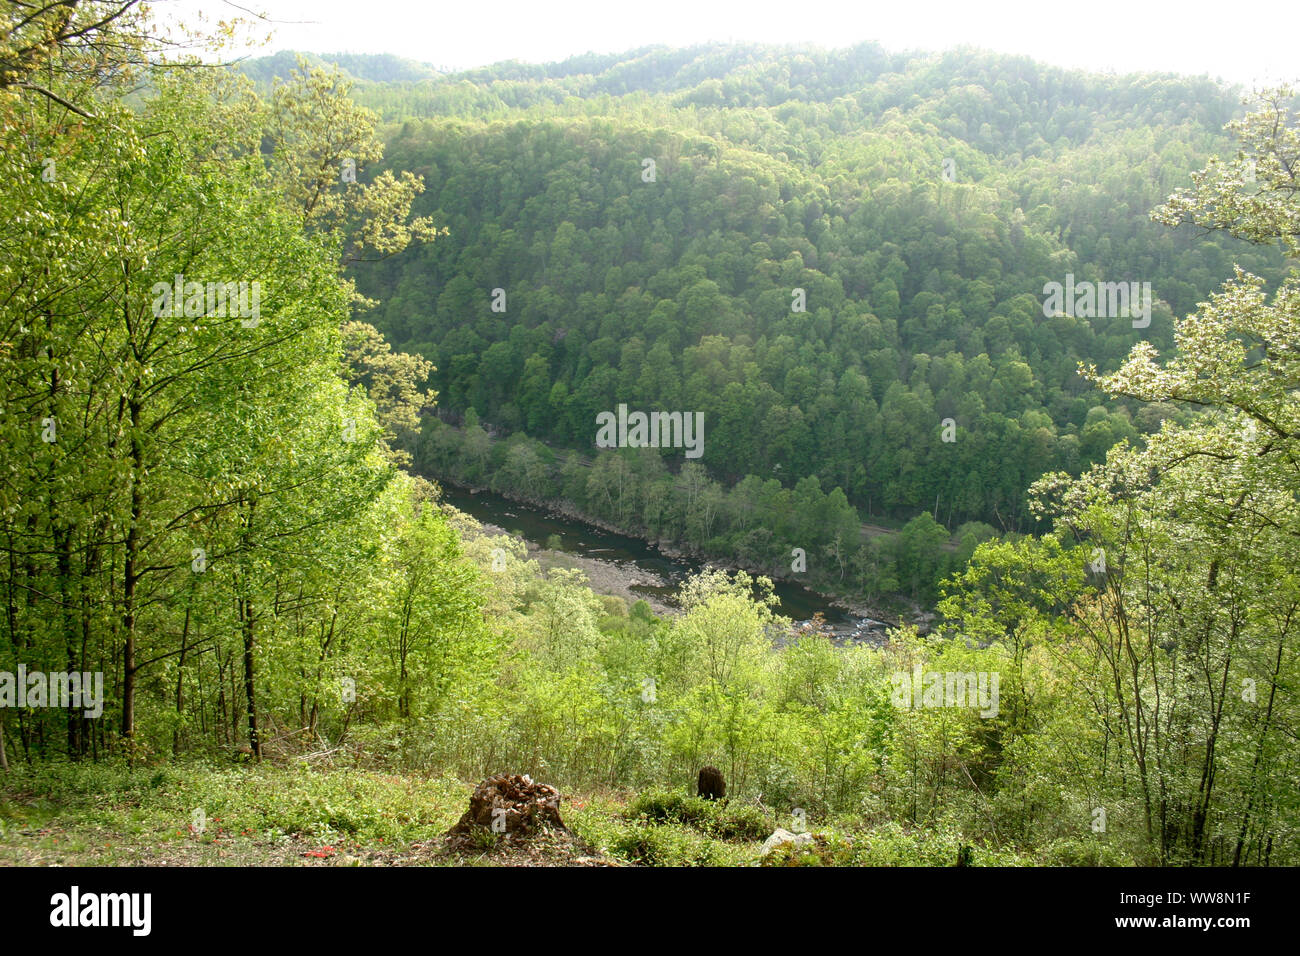 Vista del nuevo río que fluye en un valle entre montañas boscosas en West Virginia, EE.UU. Foto de stock